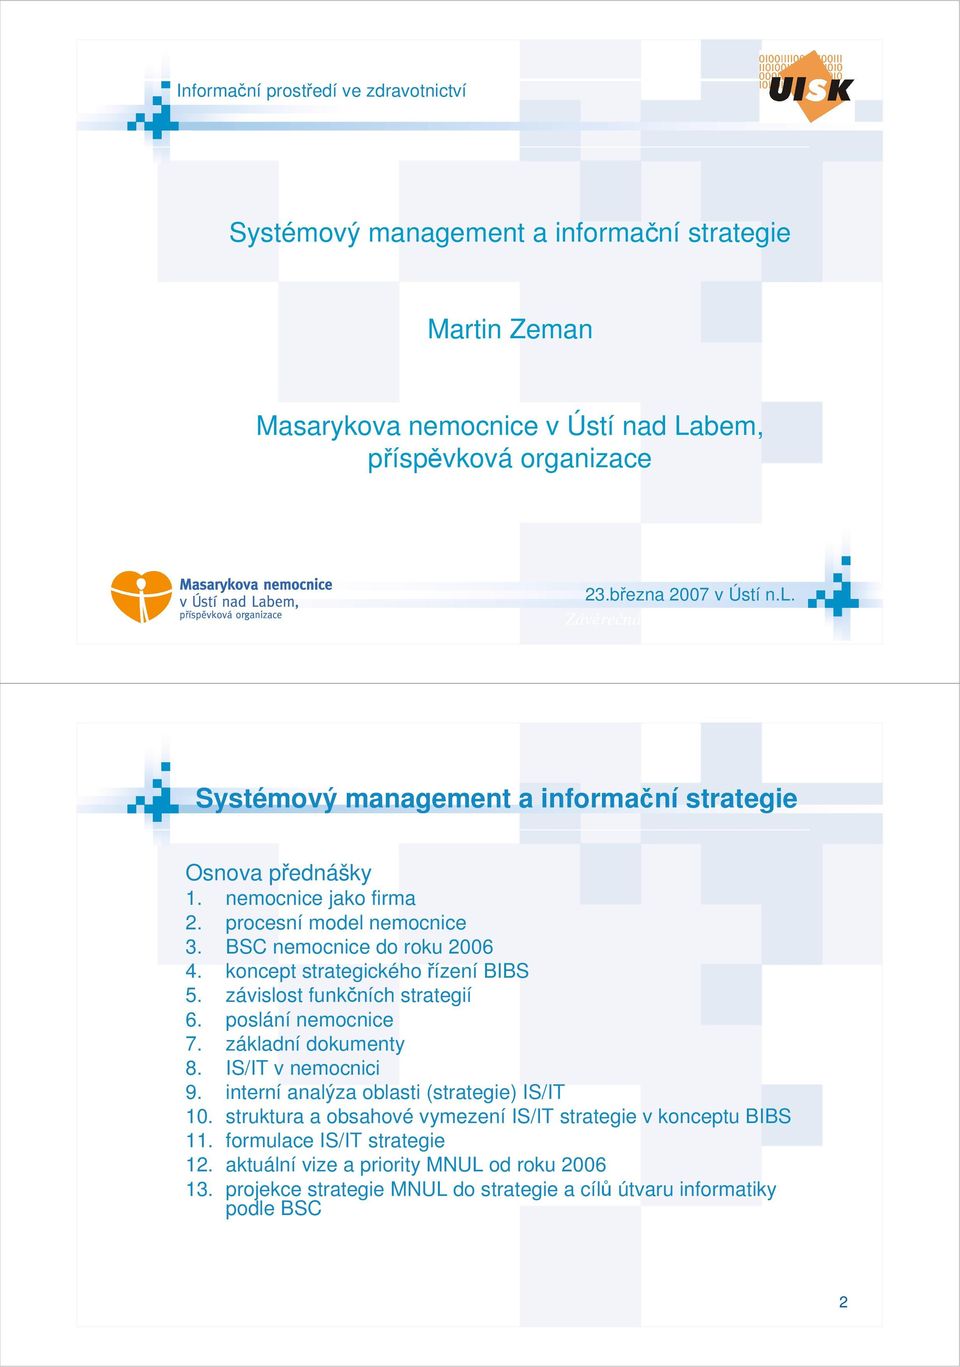 koncept strategického řízení BIBS 5. závislost funkčních strategií 6. poslání nemocnice 7. základní dokumenty 8. IS/IT v nemocnici 9. interní analýza oblasti (strategie) IS/IT 10.